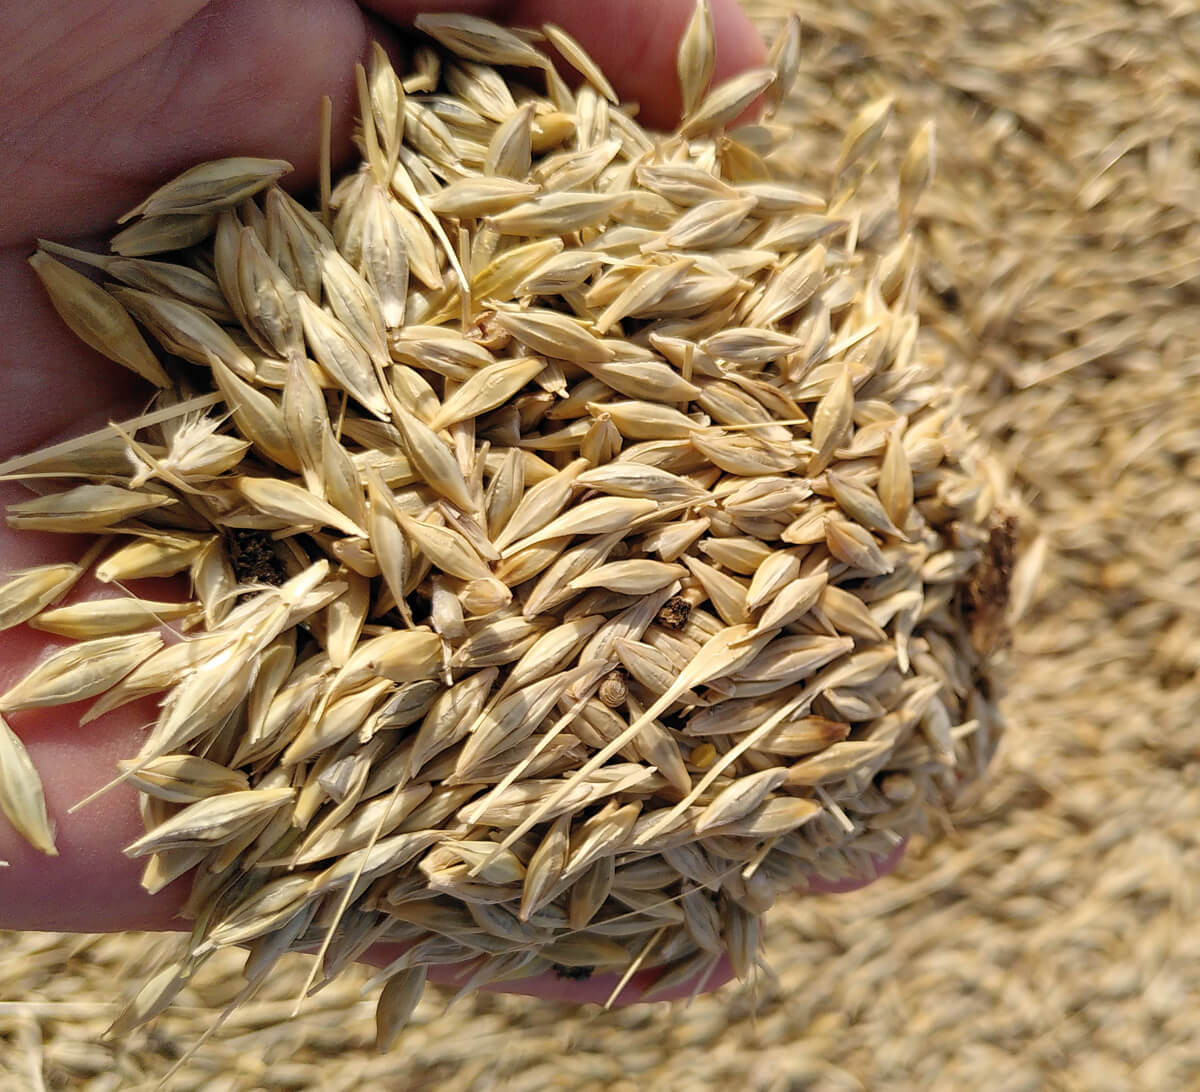 Boulgour blé complet 400g, Quinoa, boulghour, céréales